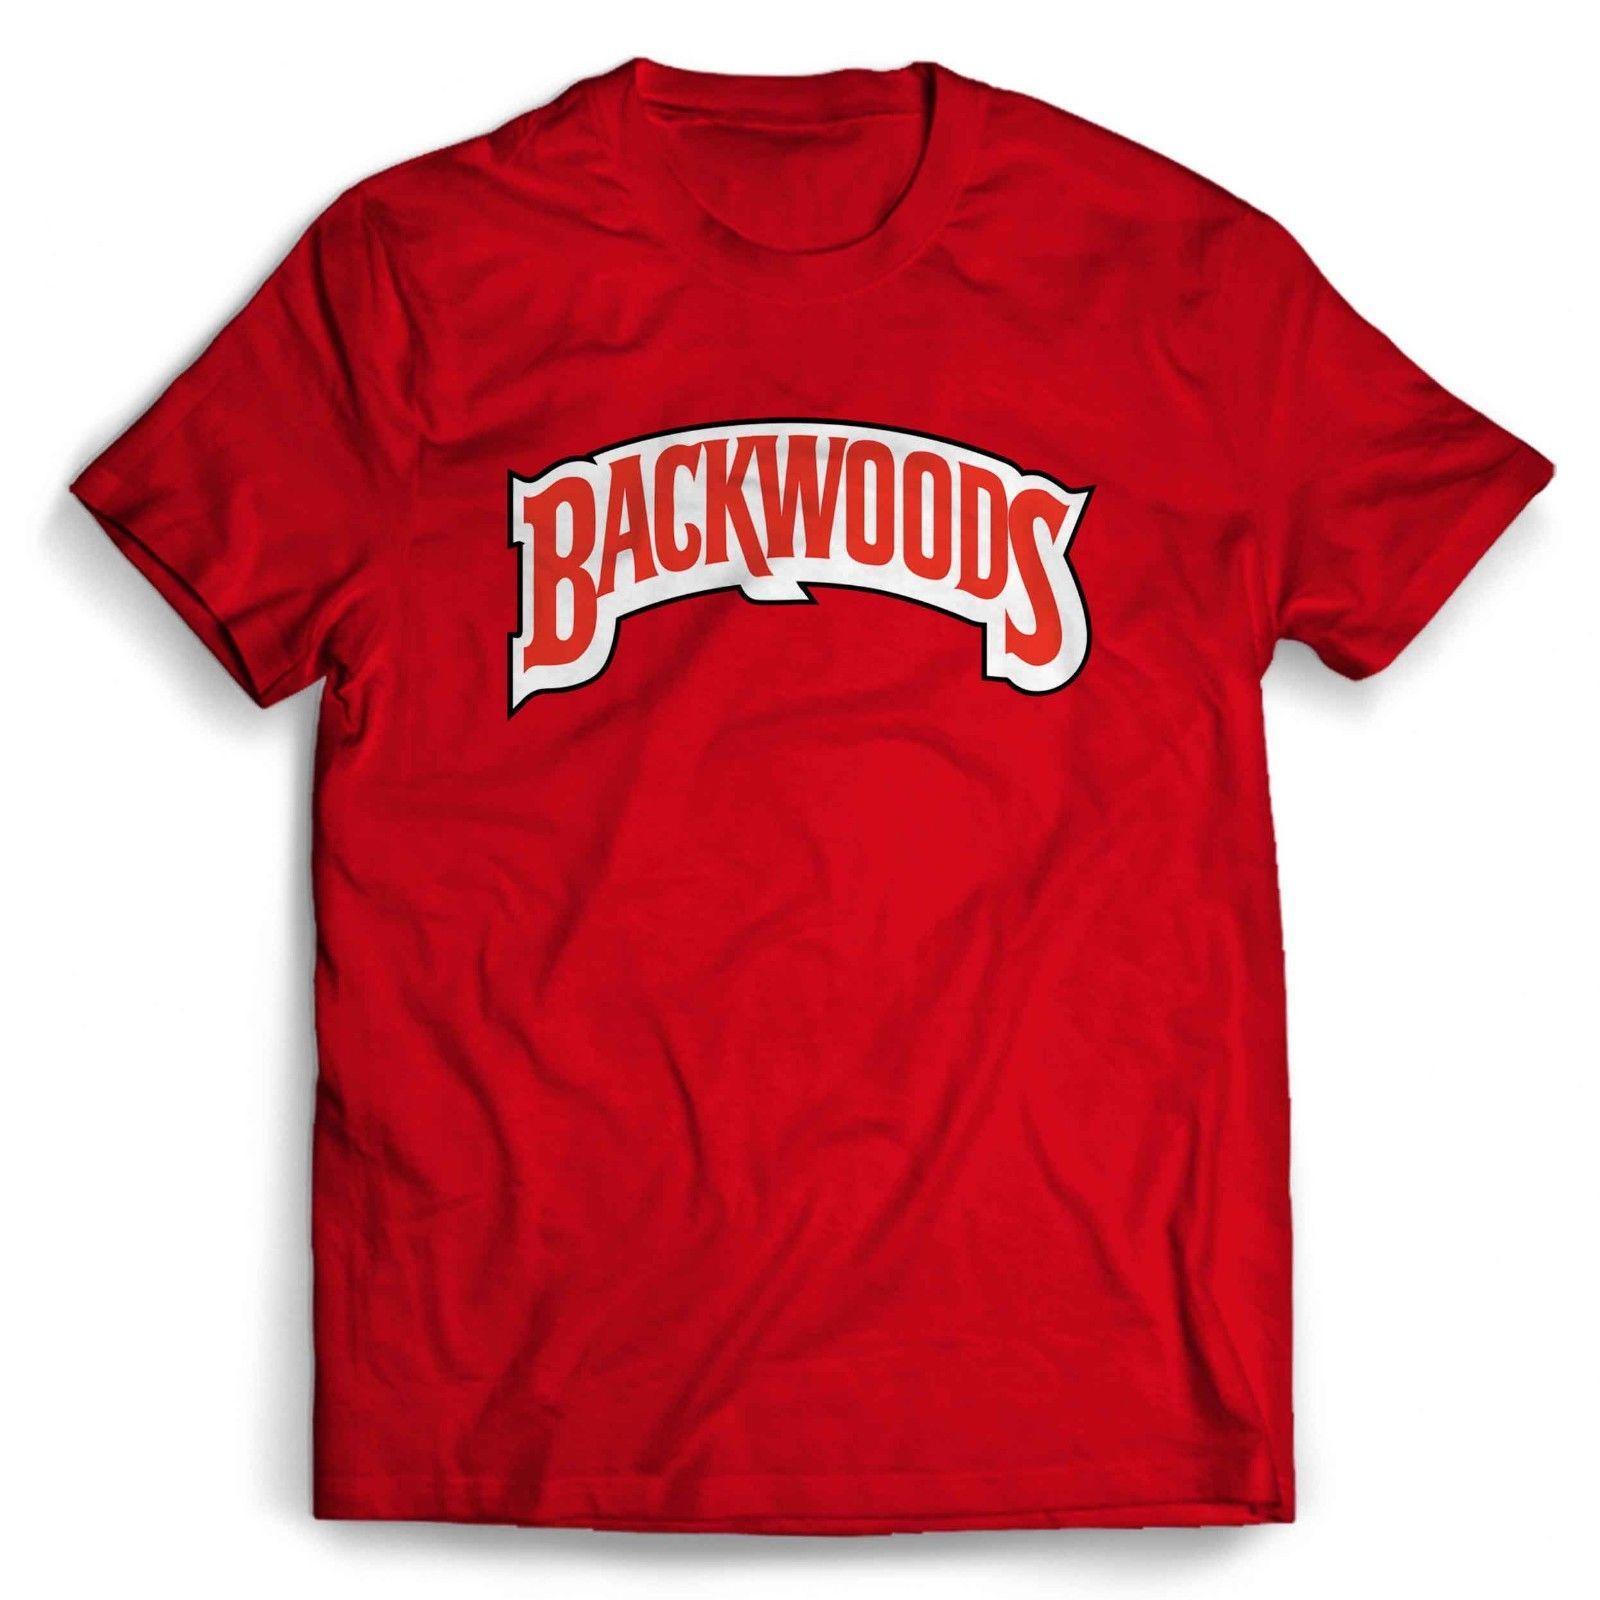 Backwoods Logo - Backwoods Logo Man's T ShirtFunny Unisex Casual Tee Gift Free